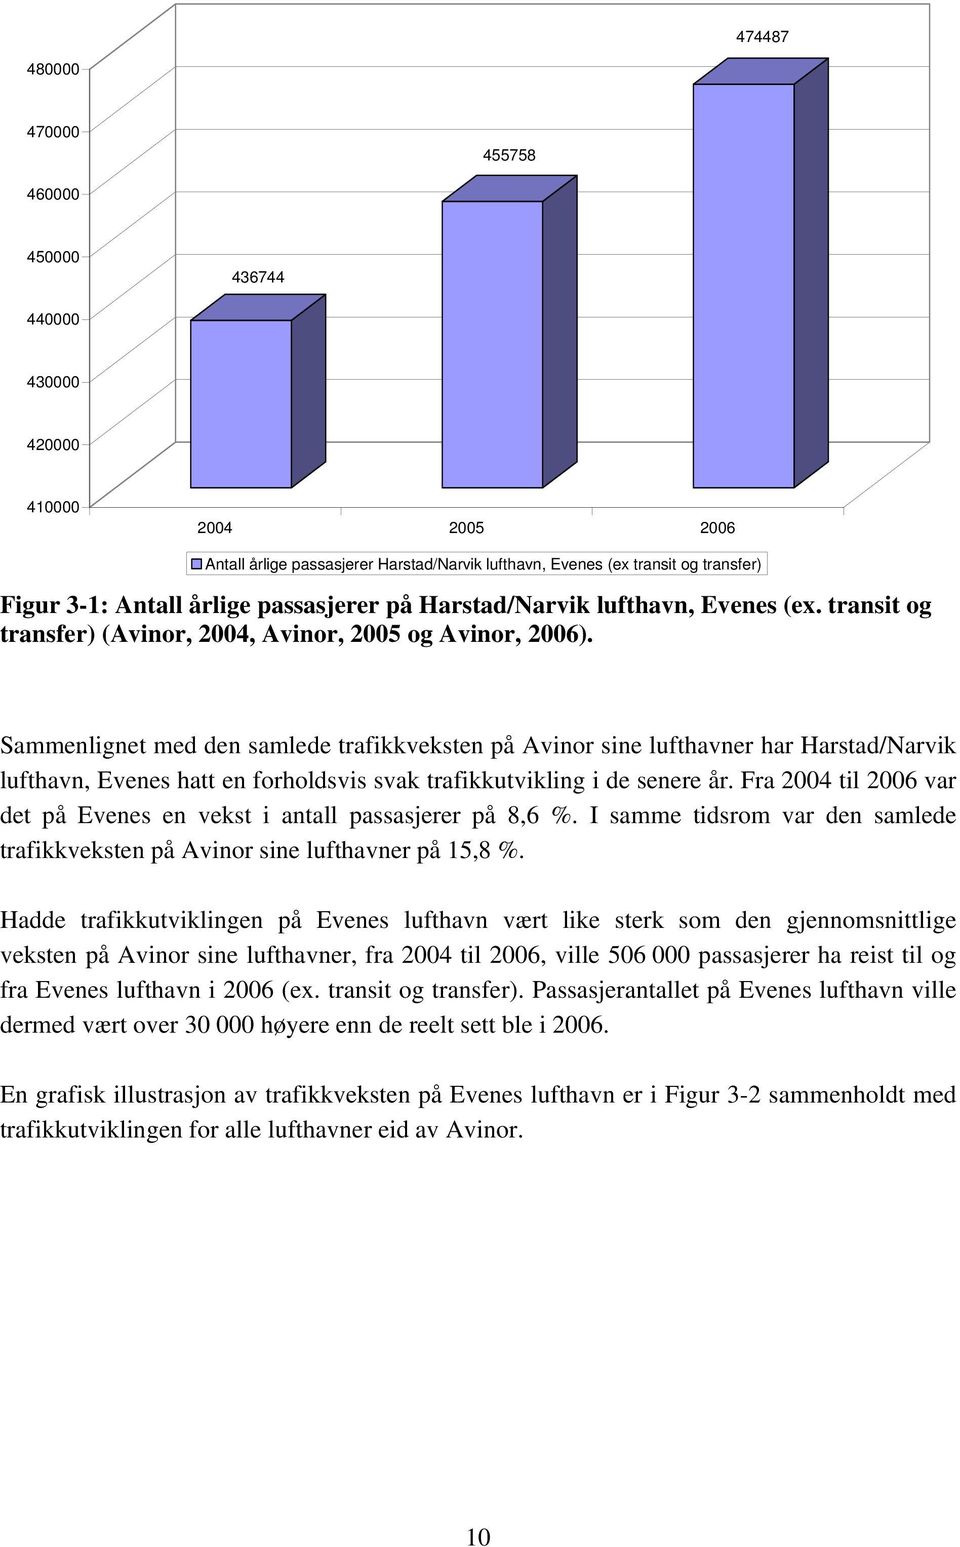 Sammenlignet med den samlede trafikkveksten på Avinor sine lufthavner har Harstad/Narvik lufthavn, Evenes hatt en forholdsvis svak trafikkutvikling i de senere år.